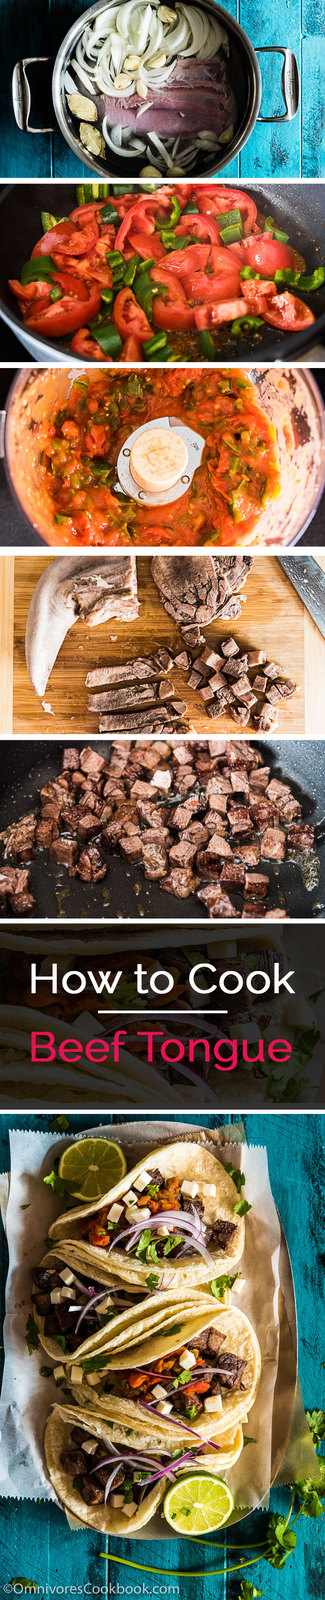 Three beef tongue recipes, including Tacos de Lengua, and Chinese Beef Tongue Salad | omnivorescookbook.com